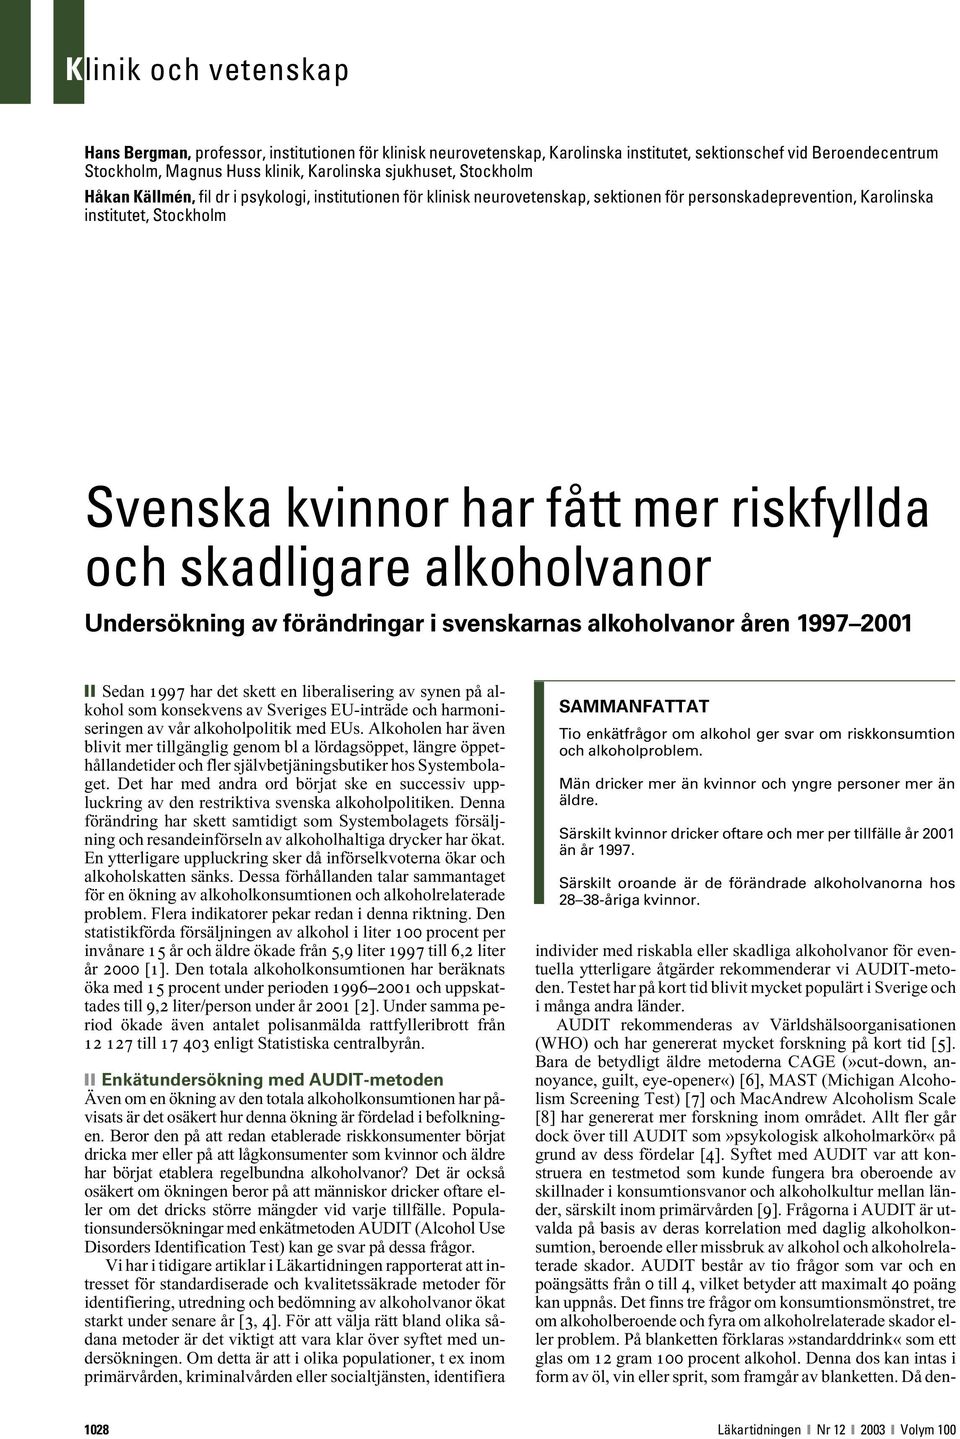 och skadligare alkoholvanor Undersökning av förändringar i svenskarnas alkoholvanor åren 1997 2001 Sedan 1997 har det skett en liberalisering av synen på alkohol som konsekvens av Sveriges EU-inträde